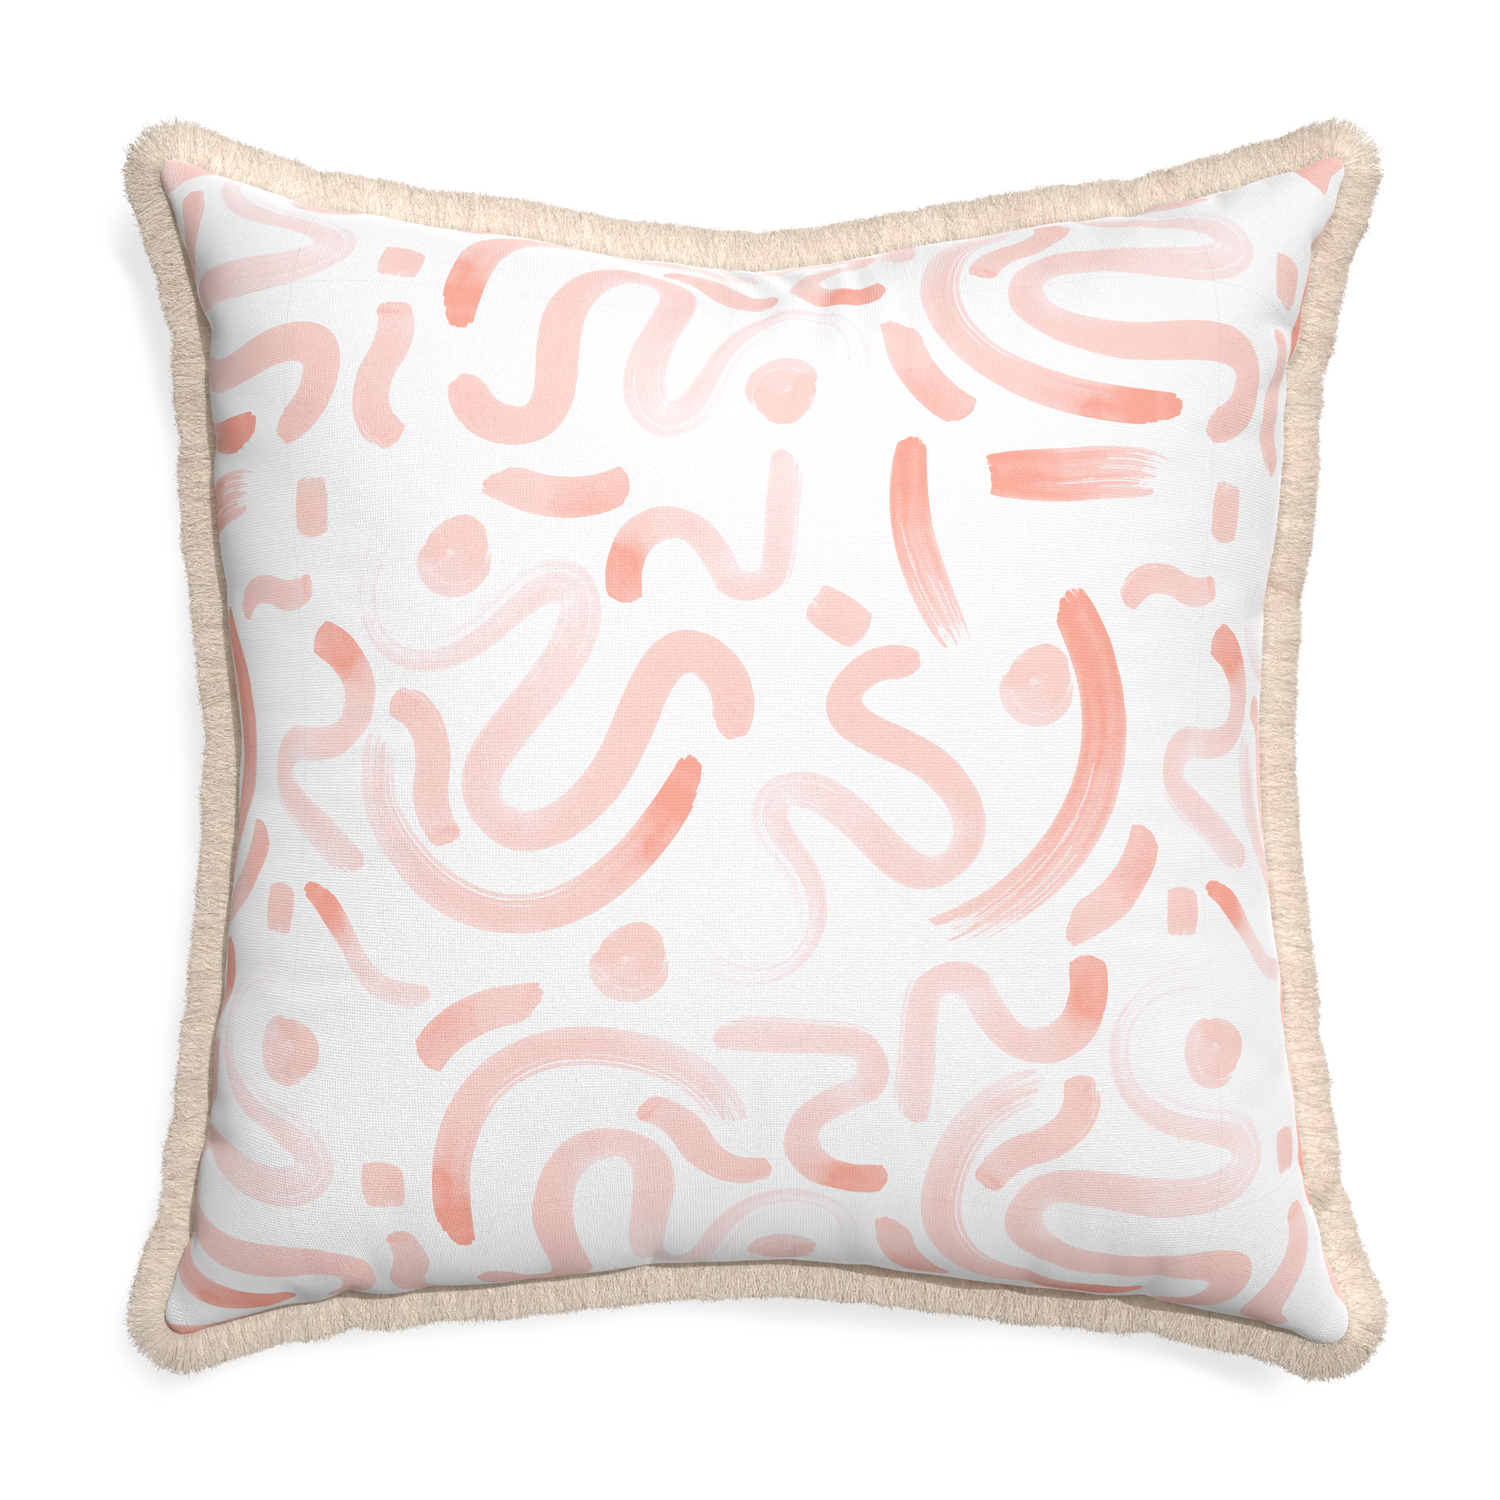 Euro-sham hockney pink custom pillow with cream fringe on white background